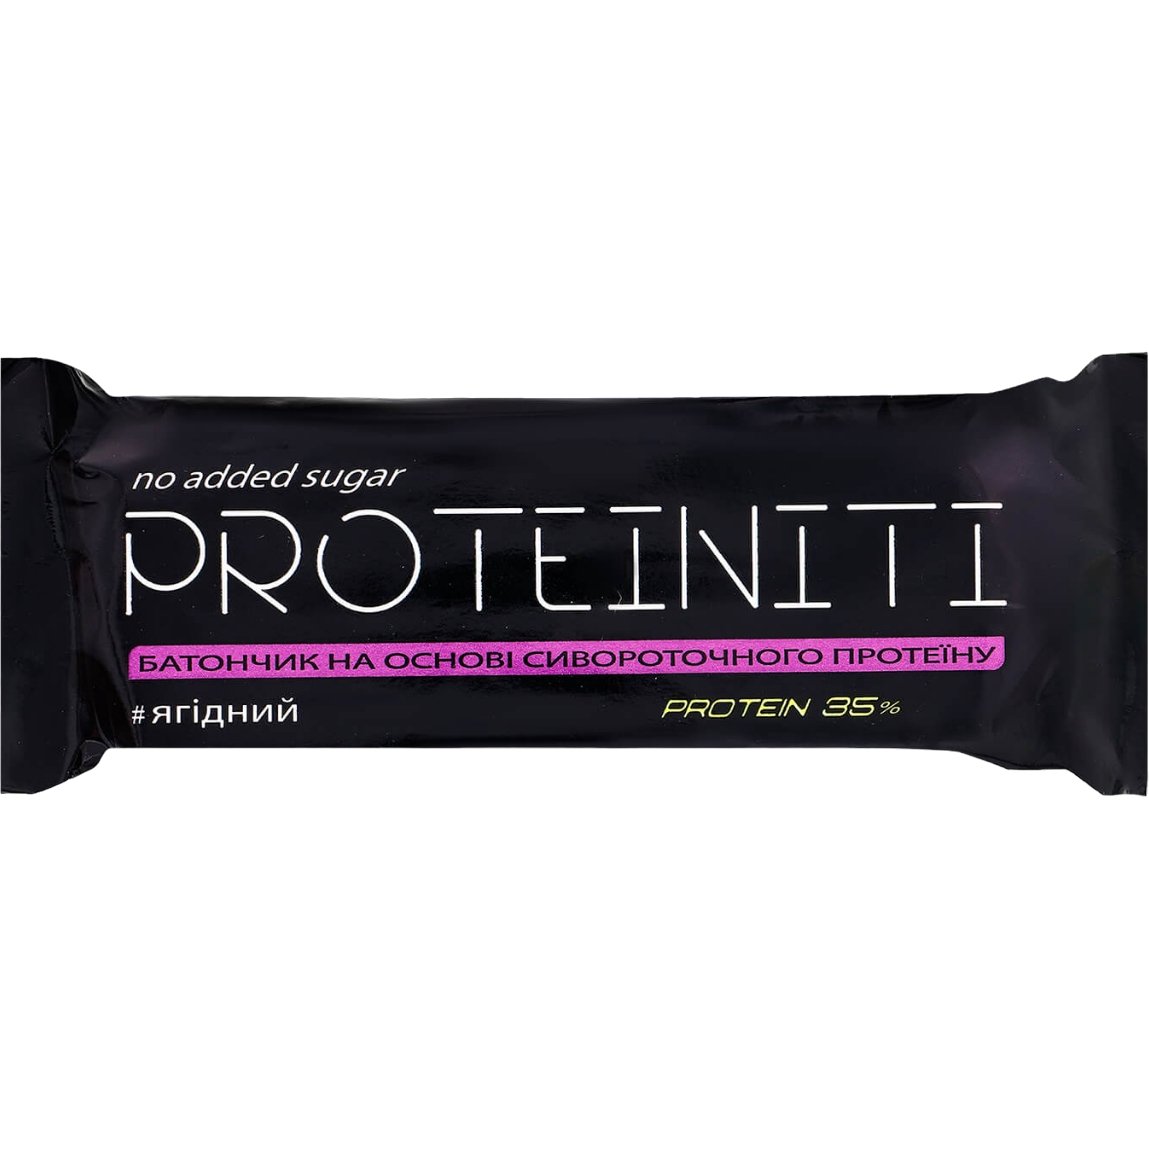 Протеїновий батончик Proteiniti Ягідний 40 г - фото 1